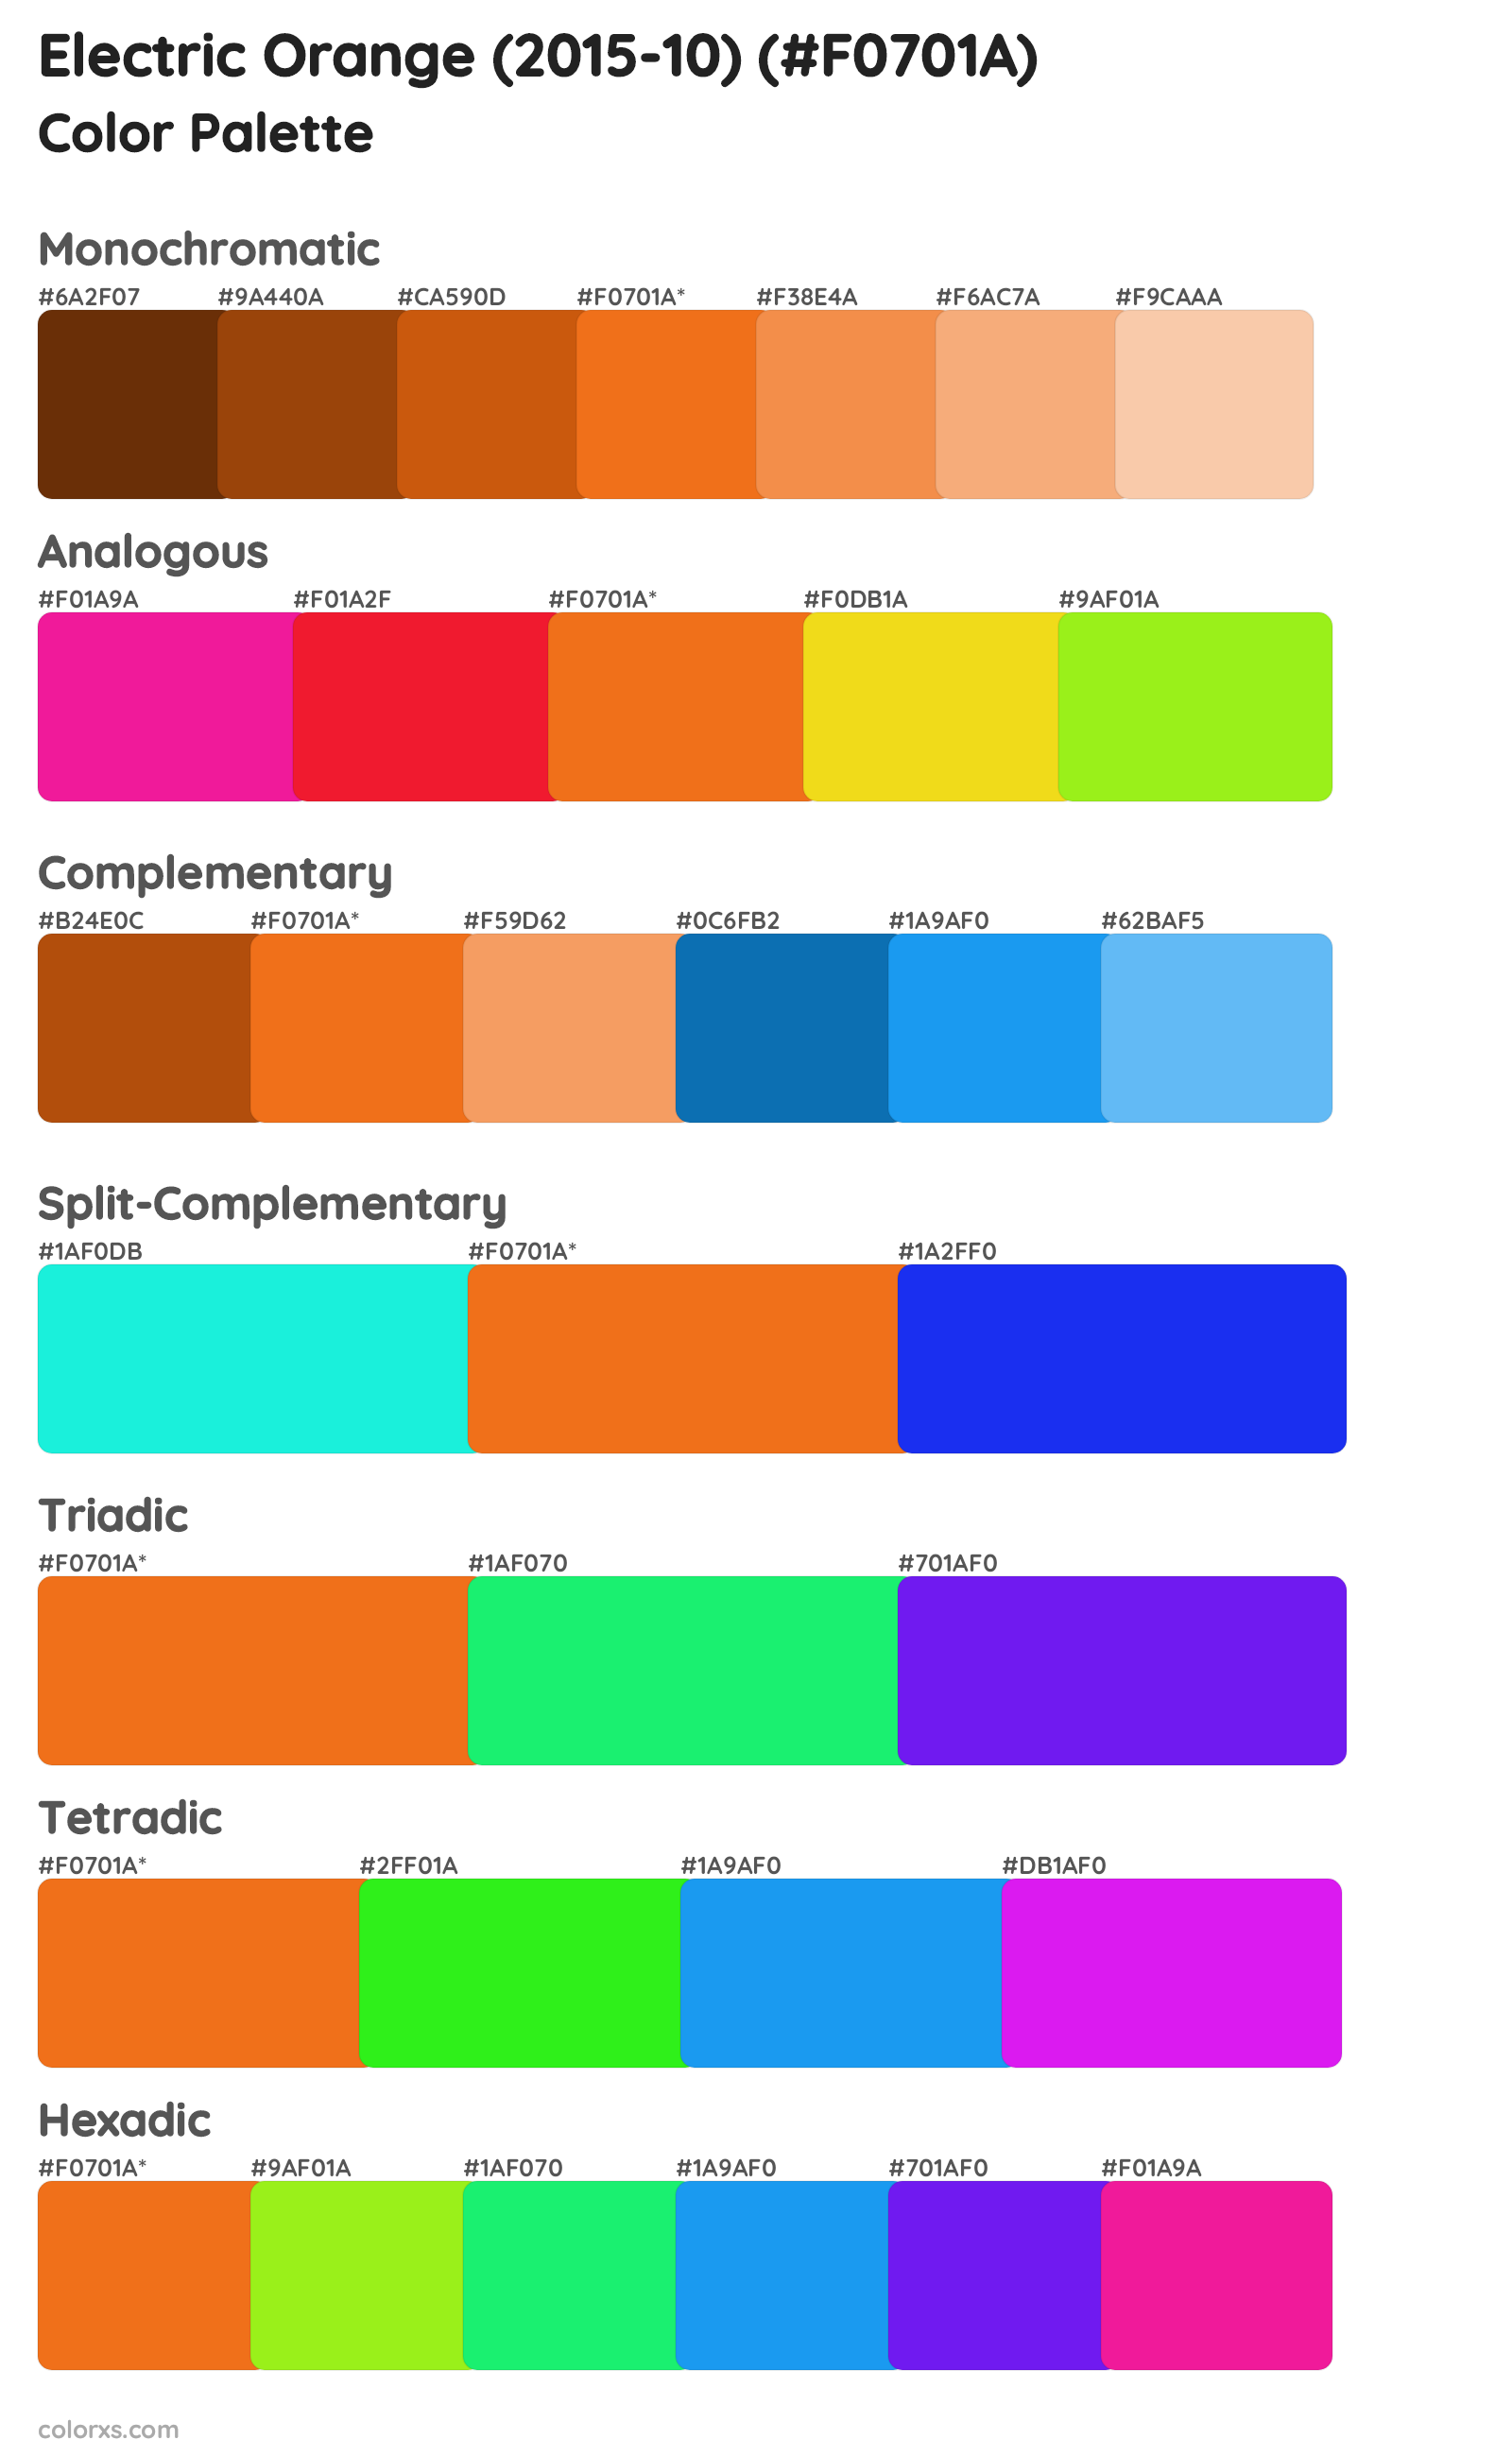 Electric Orange (2015-10) Color Scheme Palettes